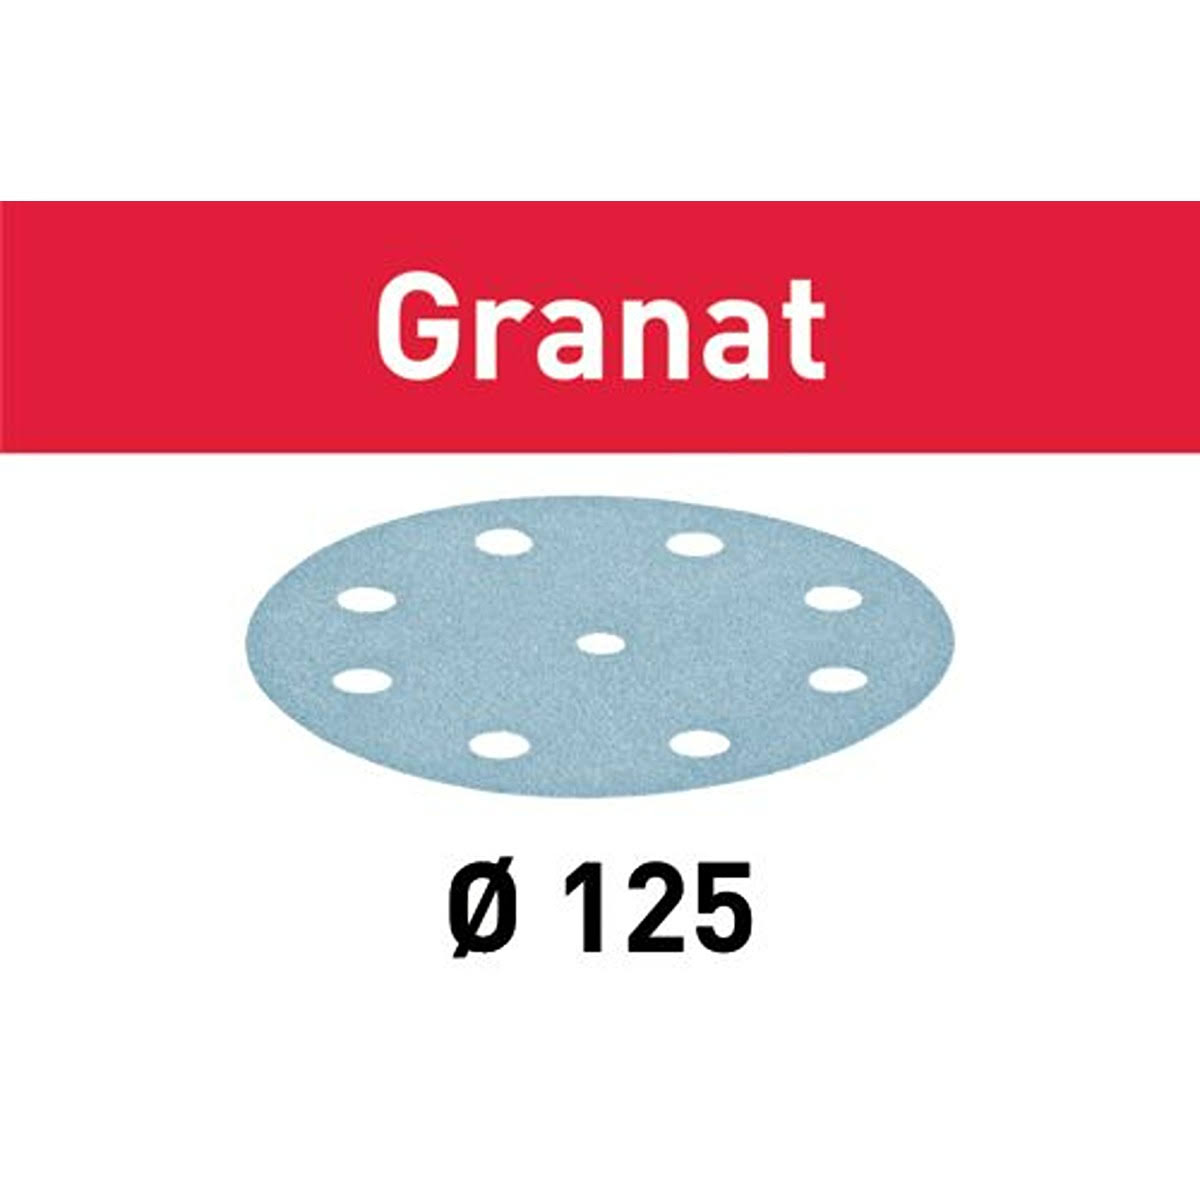 Festool 497145 Sanding Discs - 40 Grit, Granat Abrasives, Pack of 10